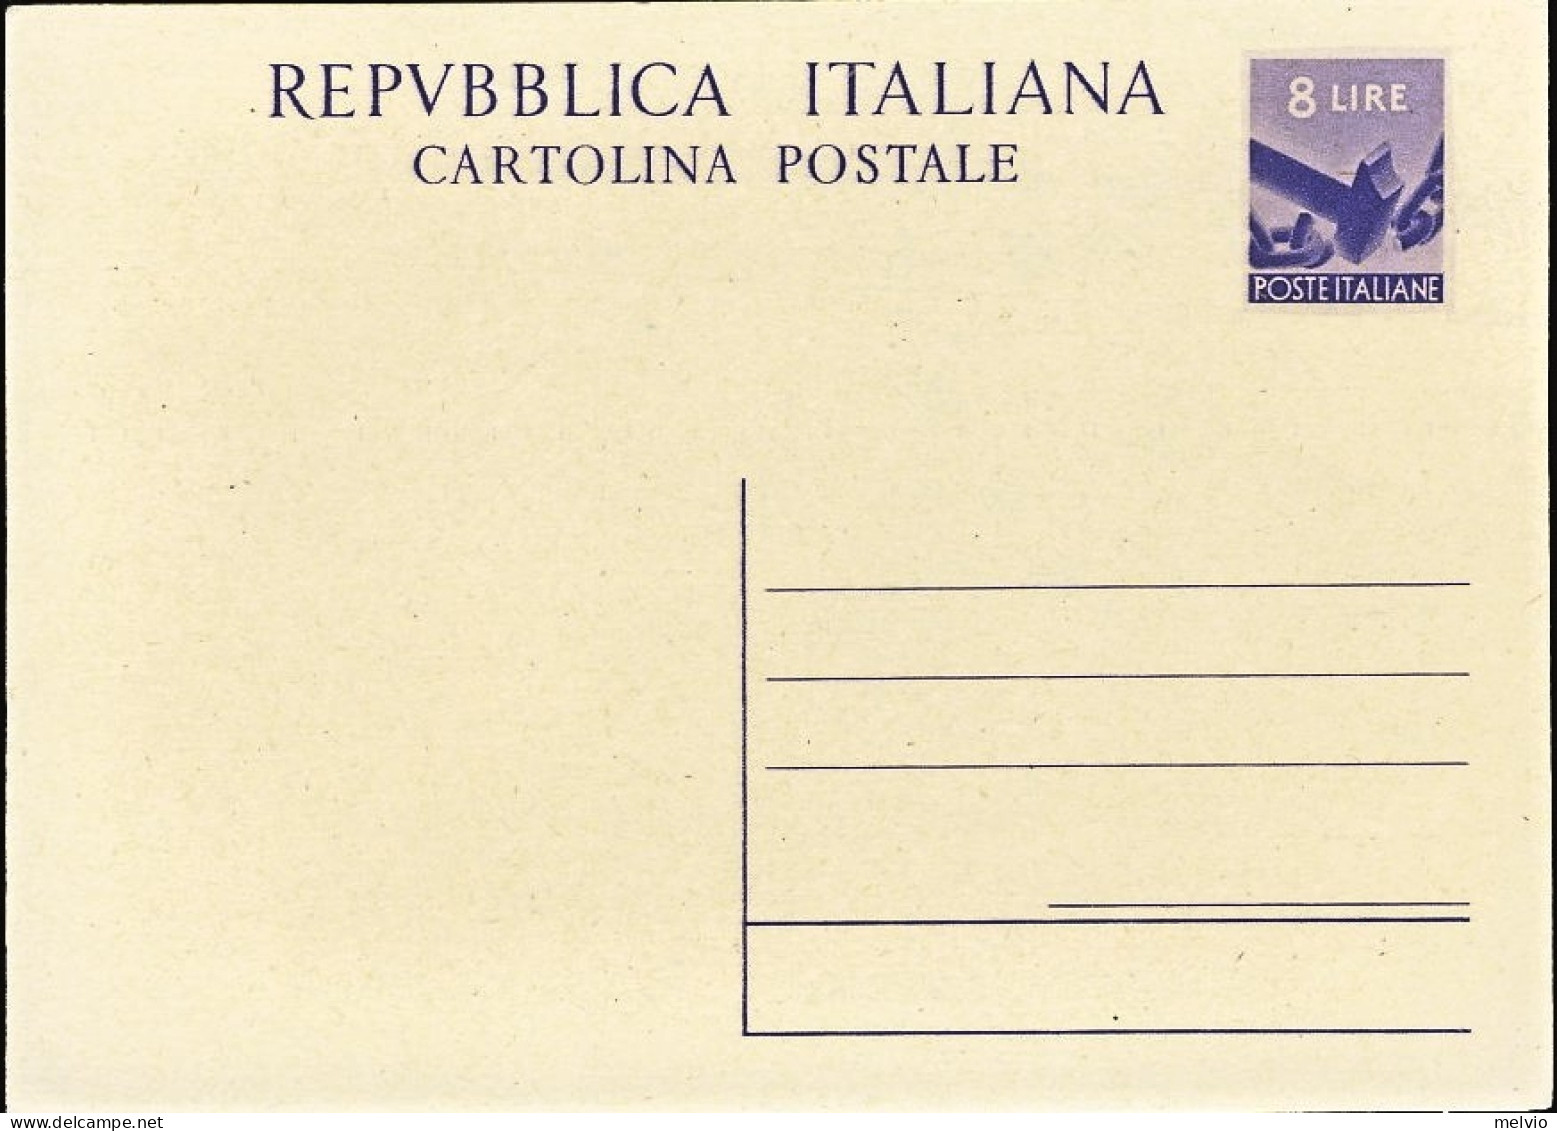 1947/49-cartolina Postale L.8 Martello Democratica "Repubblica Italiana" Cat.Fil - Entiers Postaux